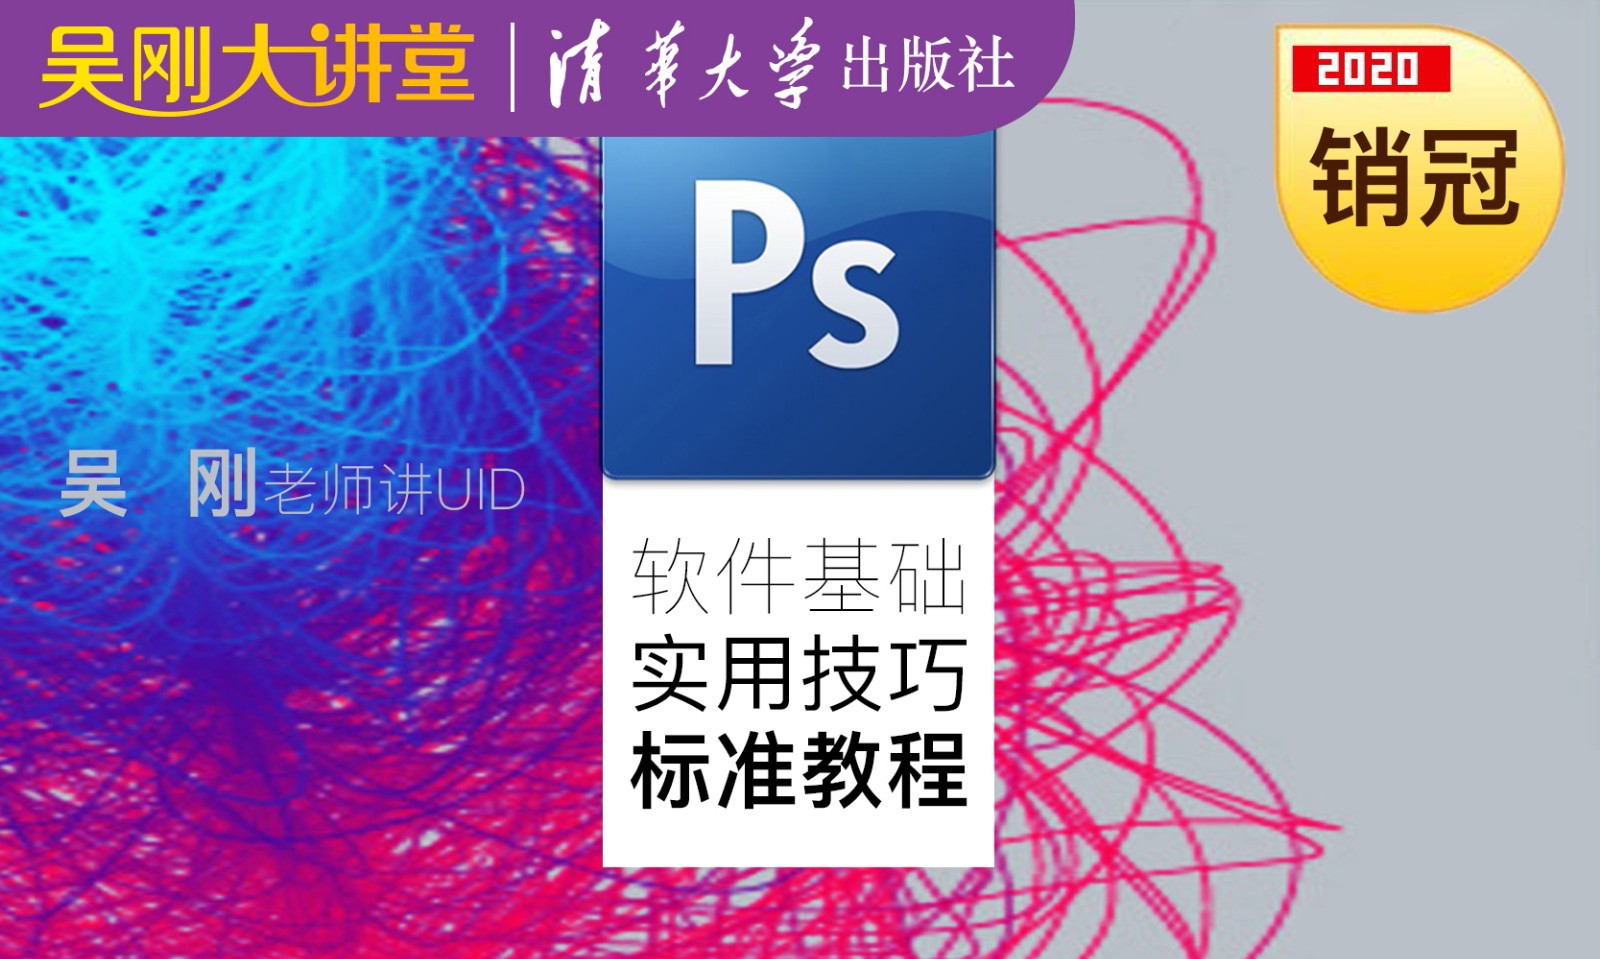 【吴刚大讲堂】Photoshop(PS)软件基础实用技巧标准视频教程